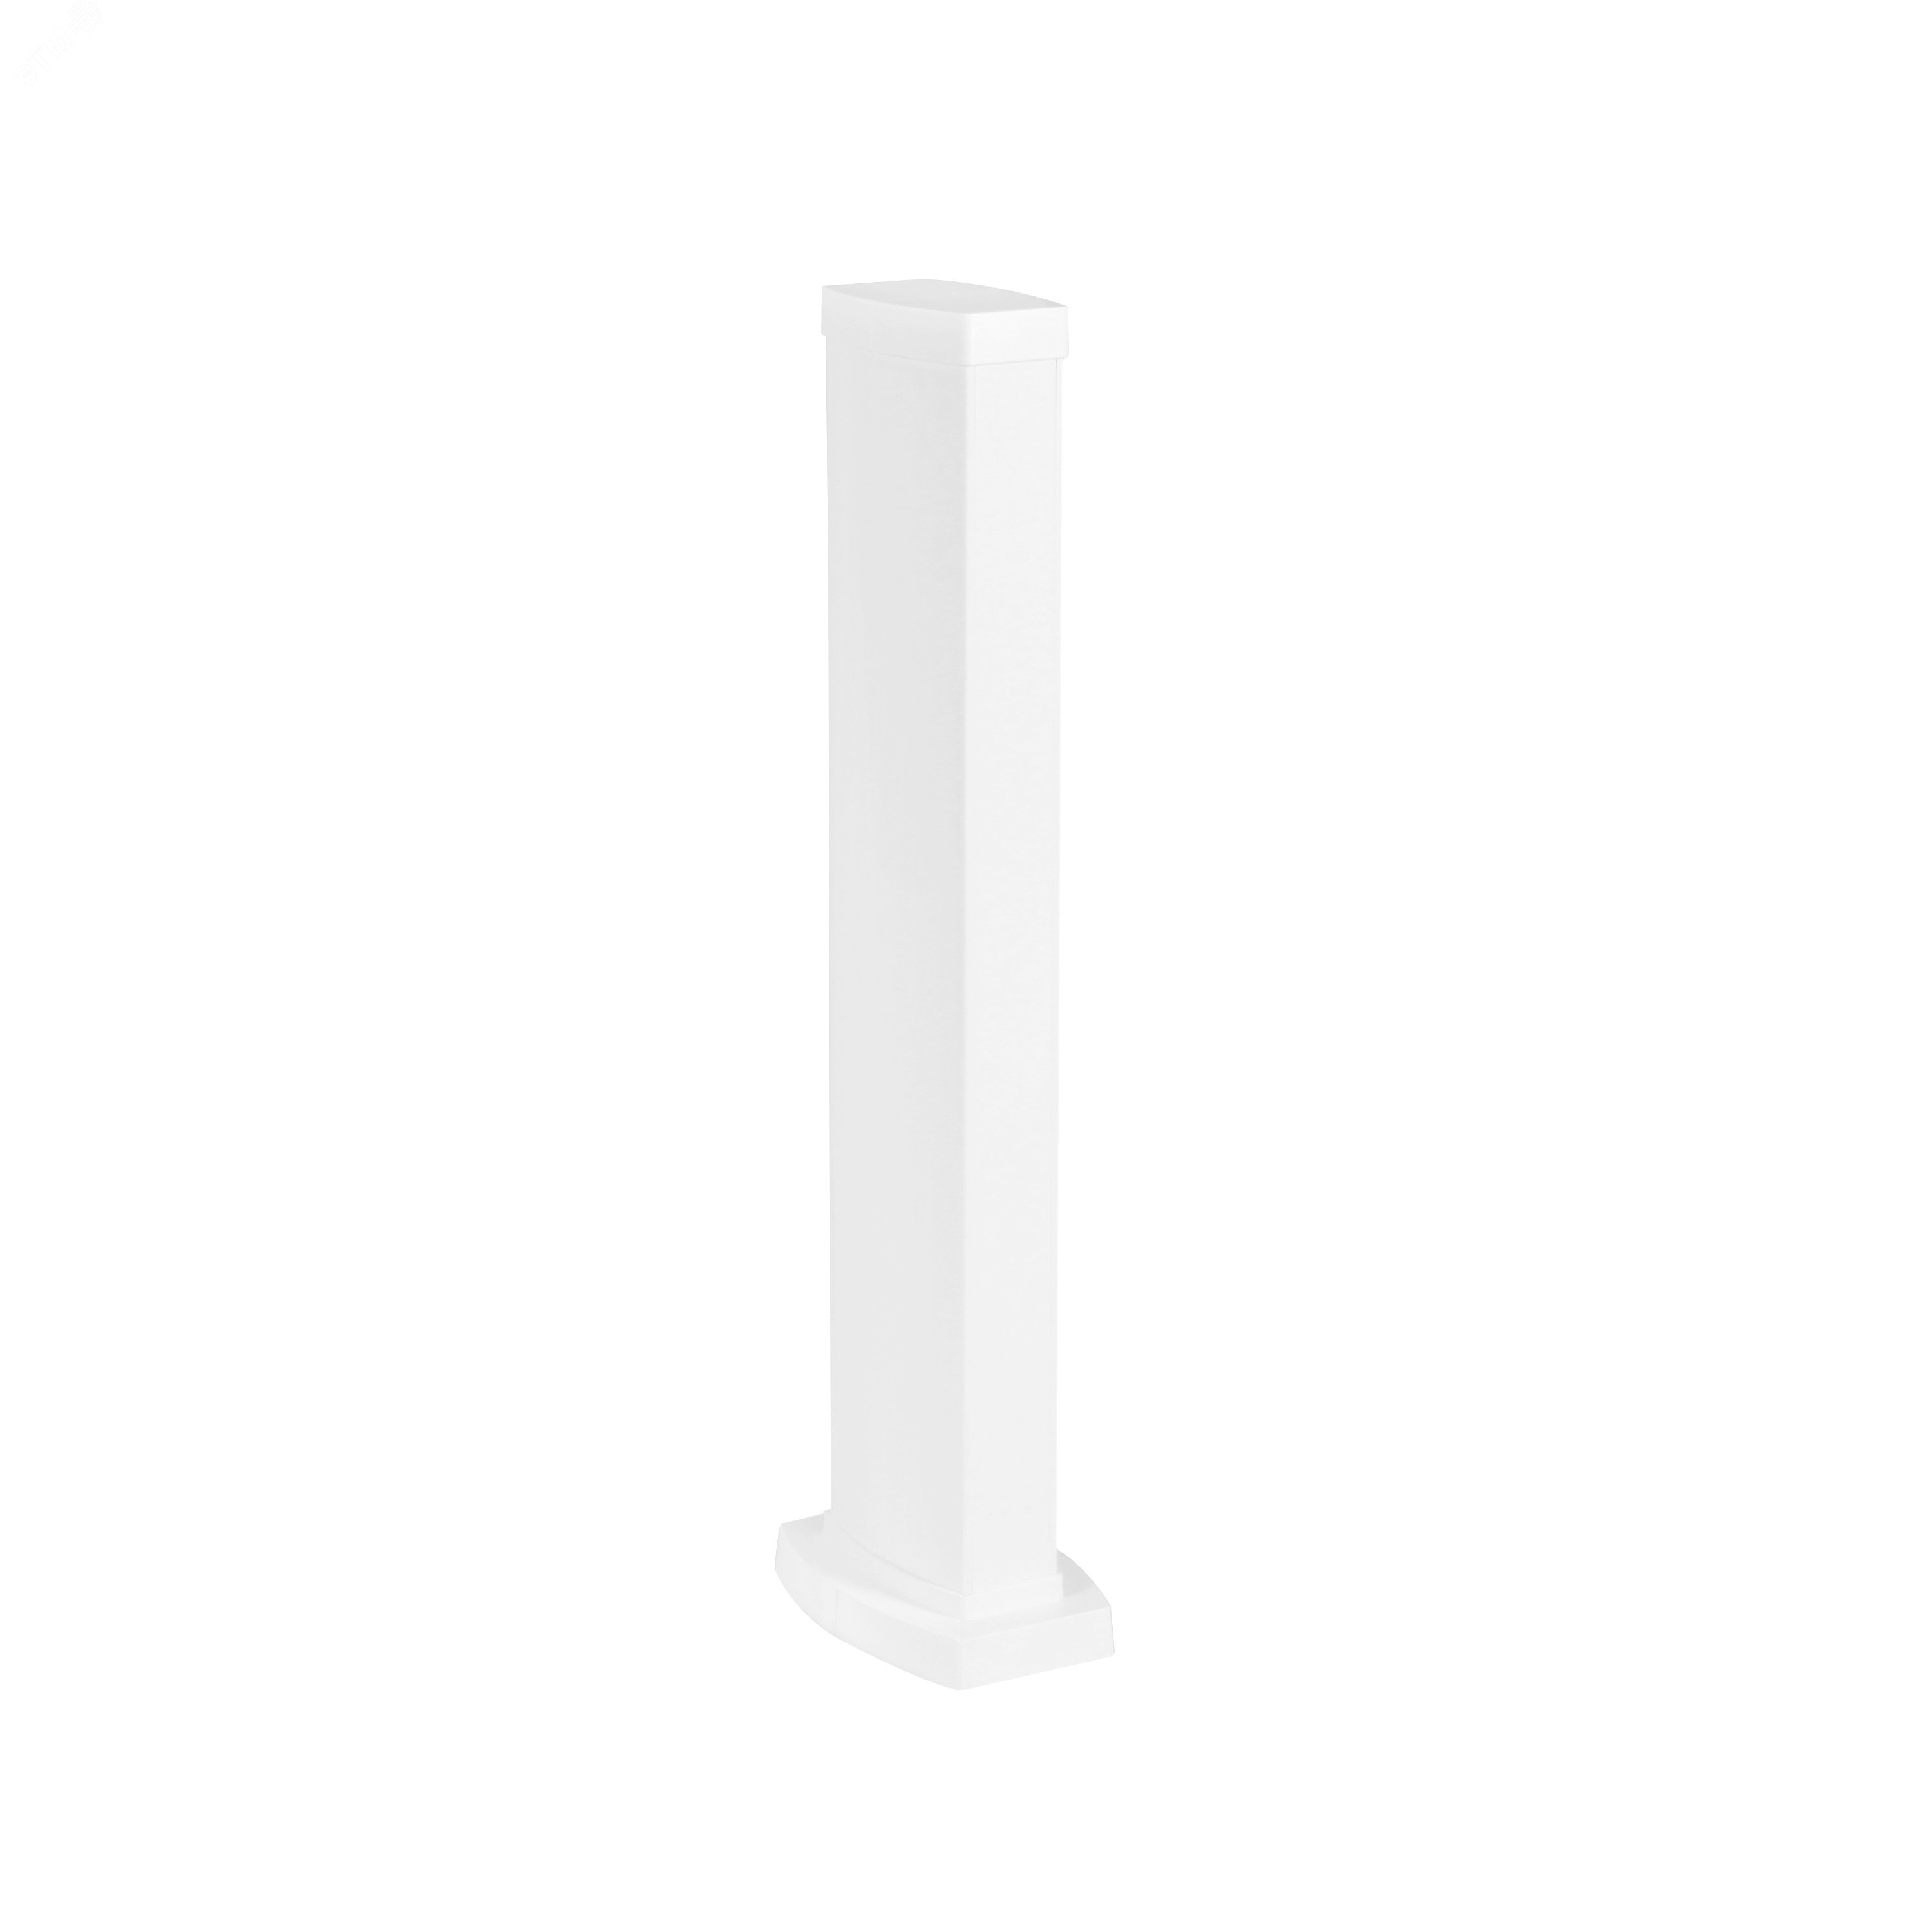 Snap-On мини-колонна пластиковая с крышкой из пластика 2 секции, высота 0,68 метра, цвет белый 653023 Legrand - превью 2